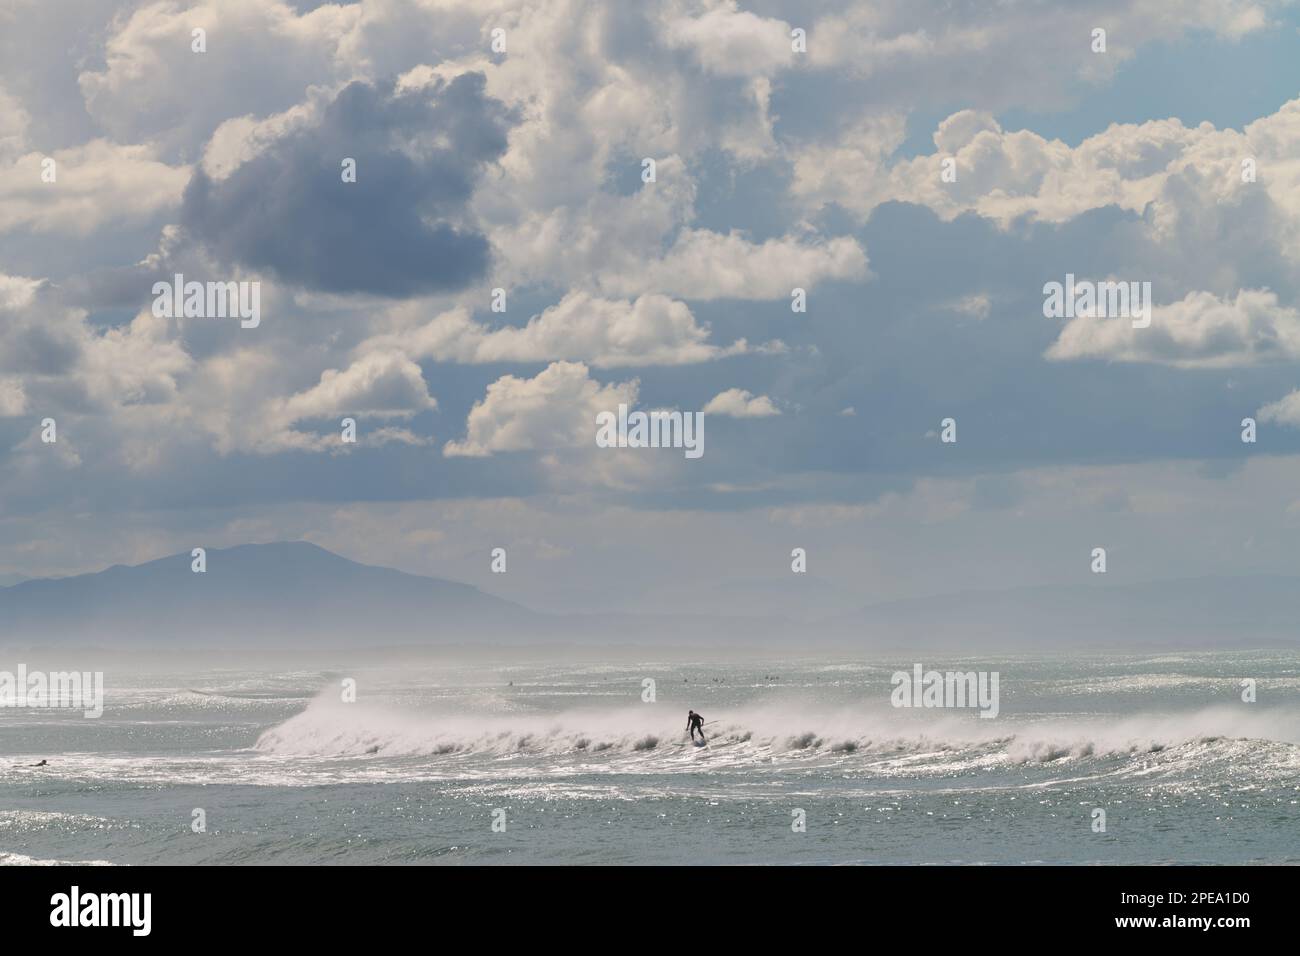 Uomo che naviga un'onda in Nuova Zelanda utilizzando una tavola da pagaiare, Pegasus Bay, con Kaikoura in lontananza, Christchurch Nuova Zelanda. Foto Stock